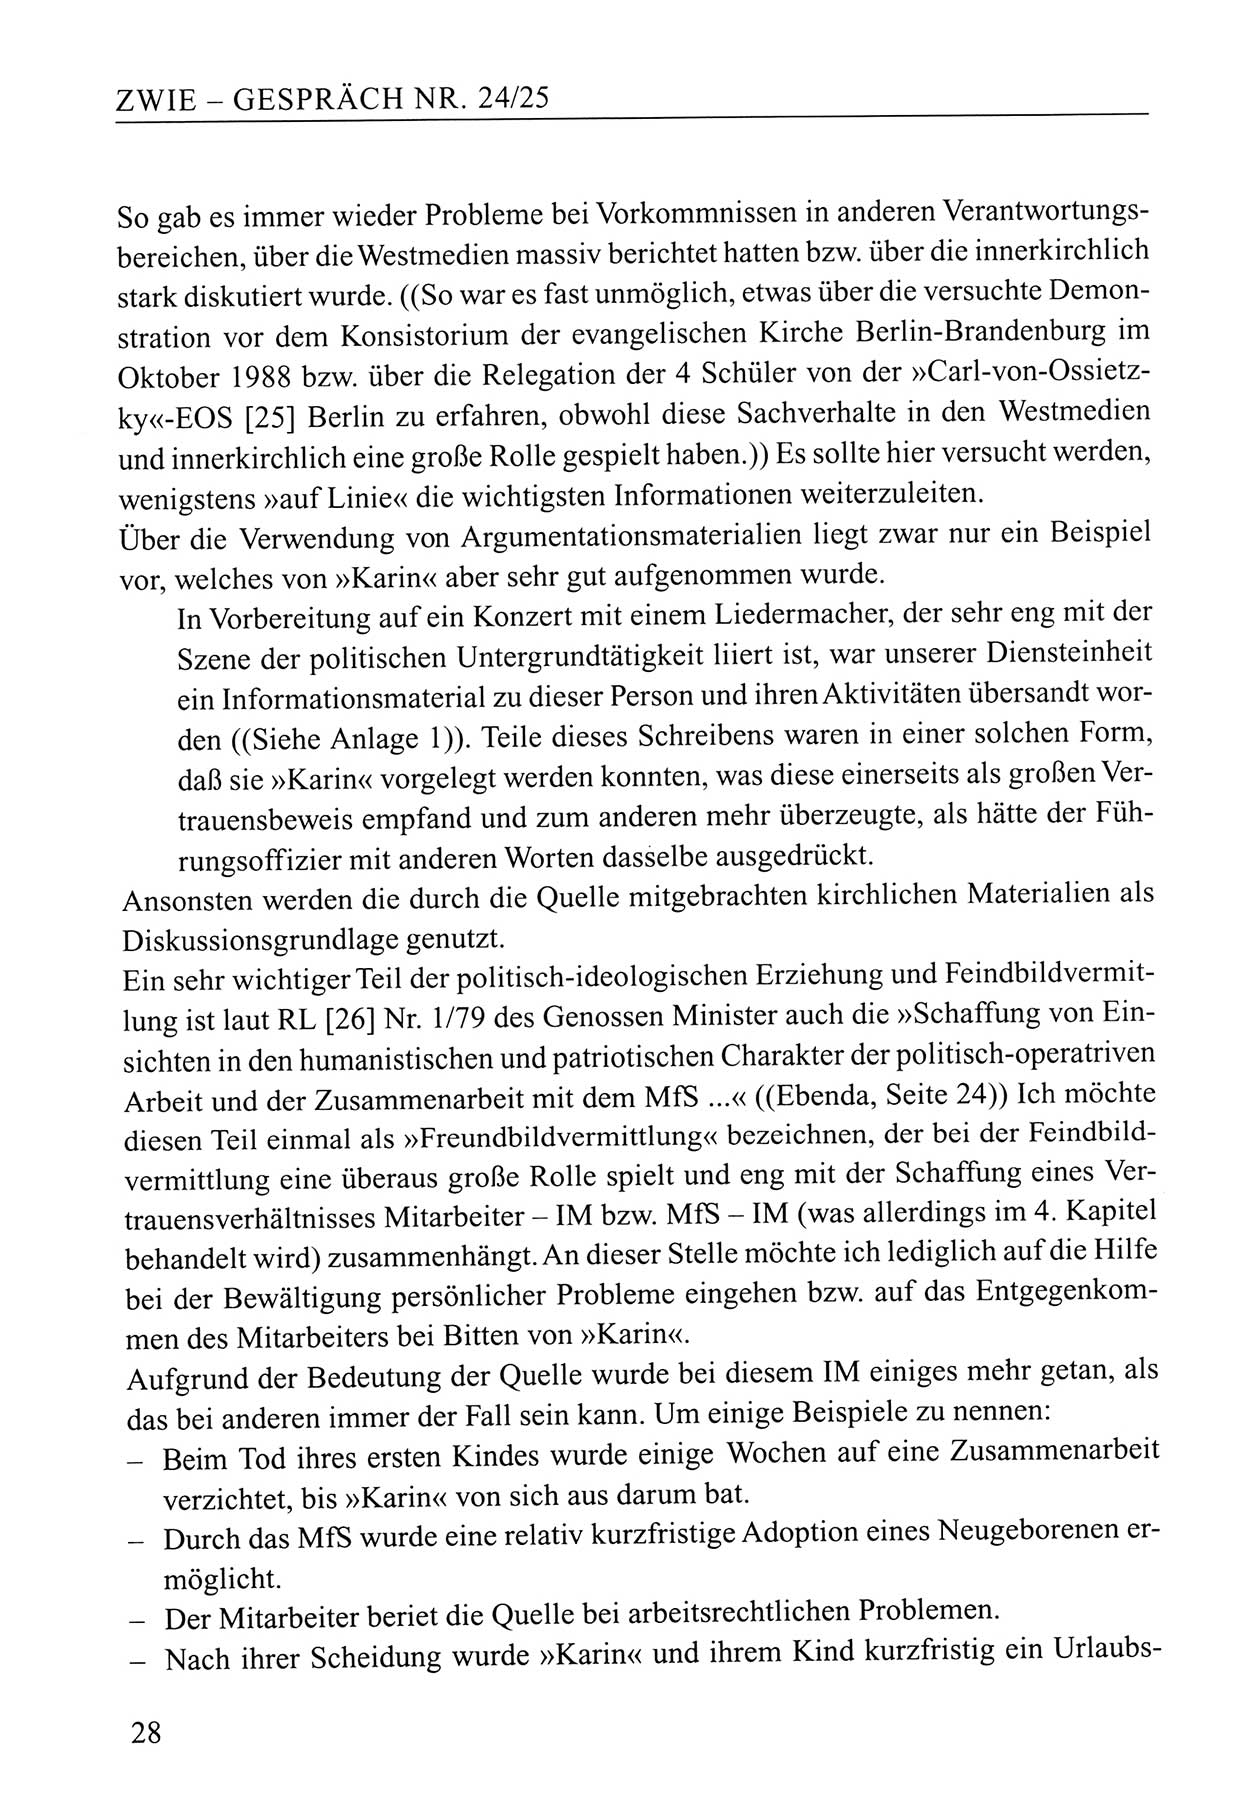 Zwie-Gespräch, Beiträge zum Umgang mit der Staatssicherheits-Vergangenheit [Deutsche Demokratische Republik (DDR)], Ausgabe Nr. 24/25, Berlin 1994, Seite 28 (Zwie-Gespr. Ausg. 24/25 1994, S. 28)